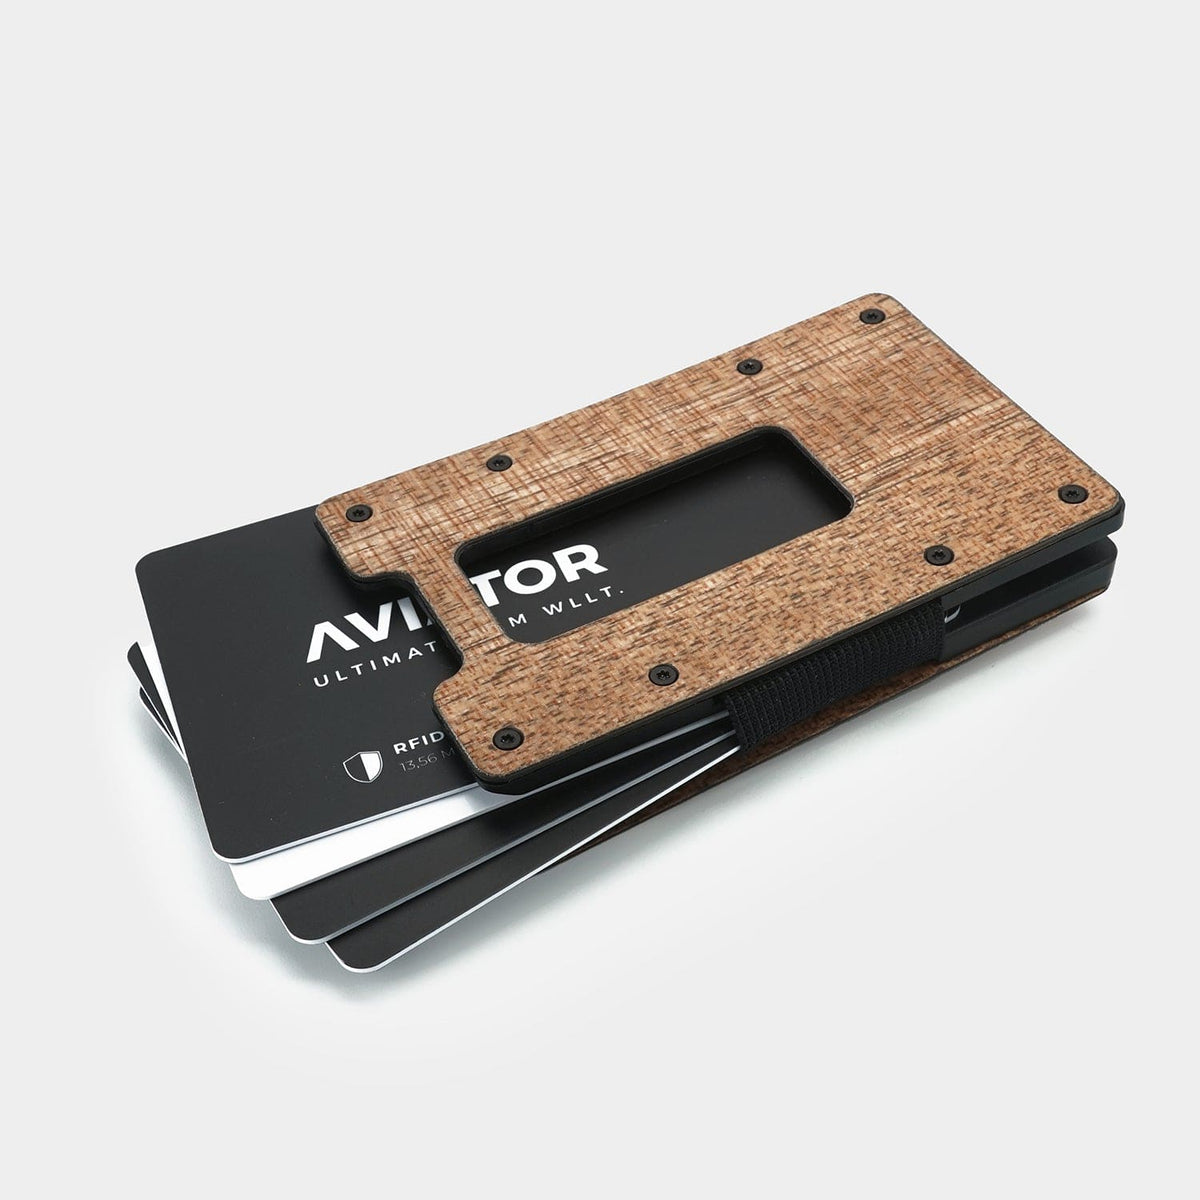 Aviator Slide | Wood | Slim Wallet Made of Wood and Carbon Fiber | Coin Holder | RFID-Protection | Credit Card Holder for Men | 1-20 Cards